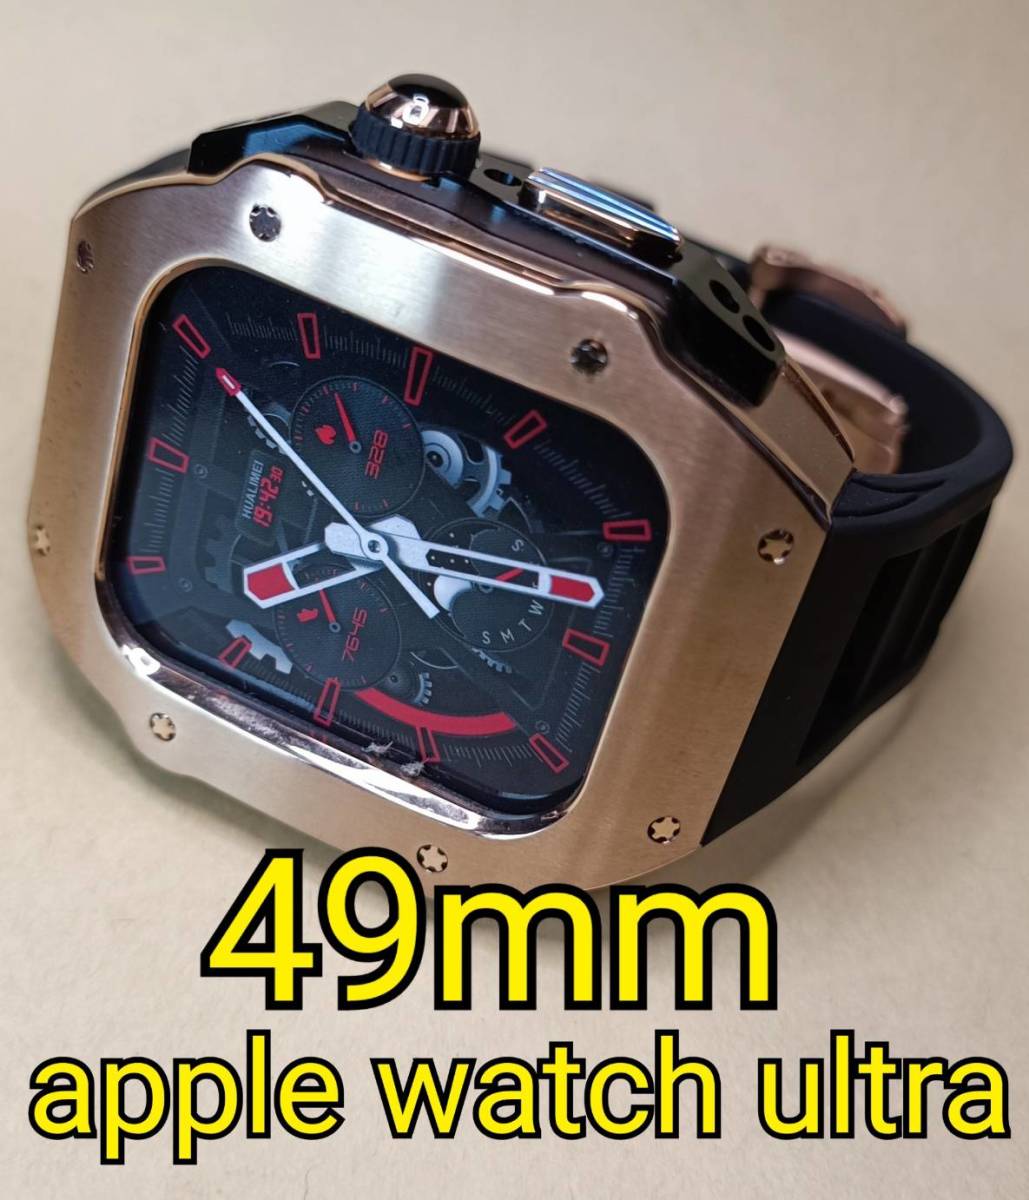 メタルRG 49mm apple watch ultra アップルウォッチウルトラ メタル ケース ステンレス カスタム golden concept ゴールデンコンセプト_画像1